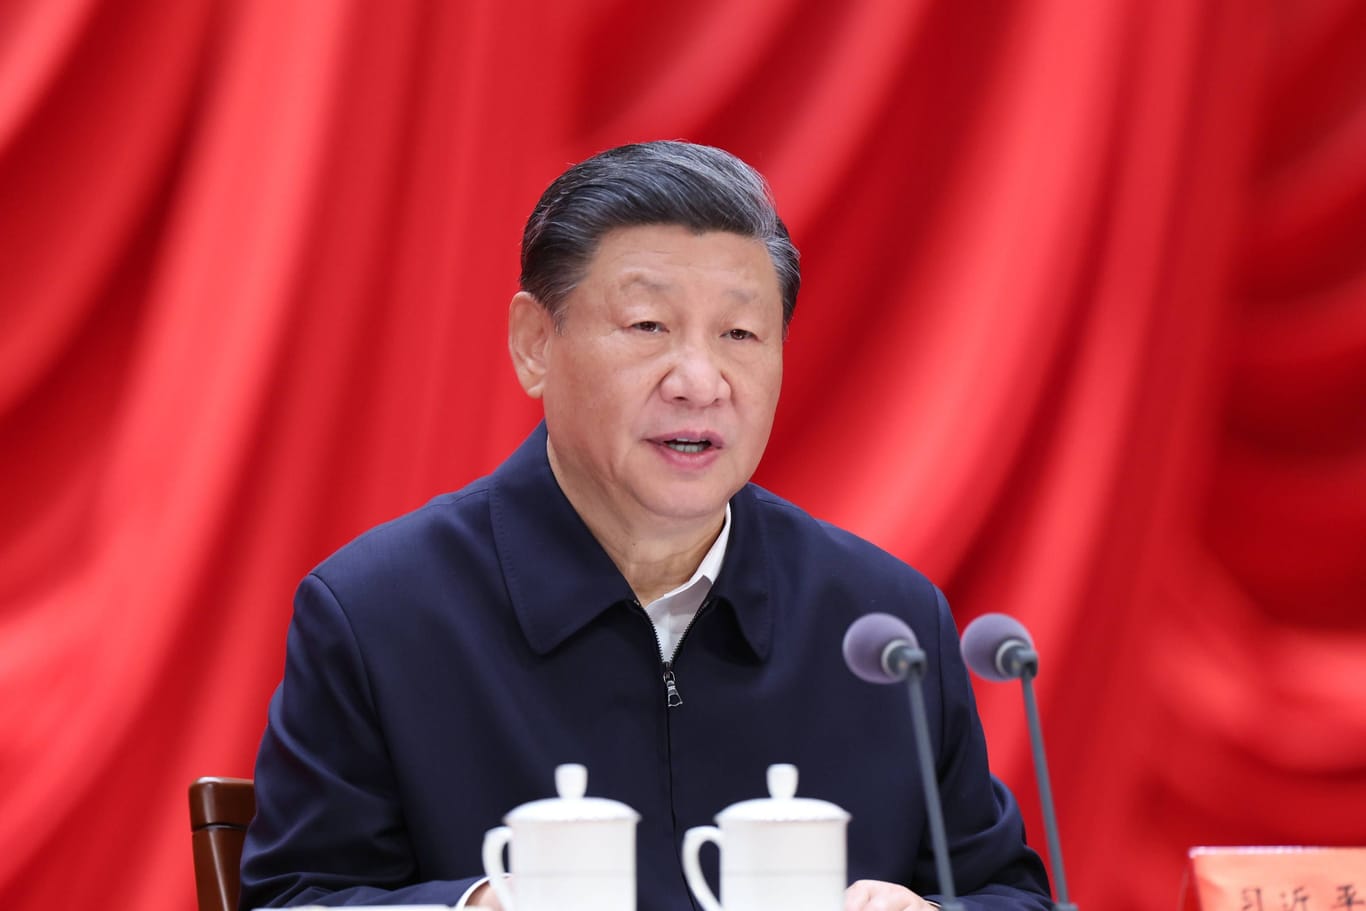 Xi Jinping: Für Europa bietet sich gerade einen Chance im Umgang mit China, sagt Expertin Janka Oertel.